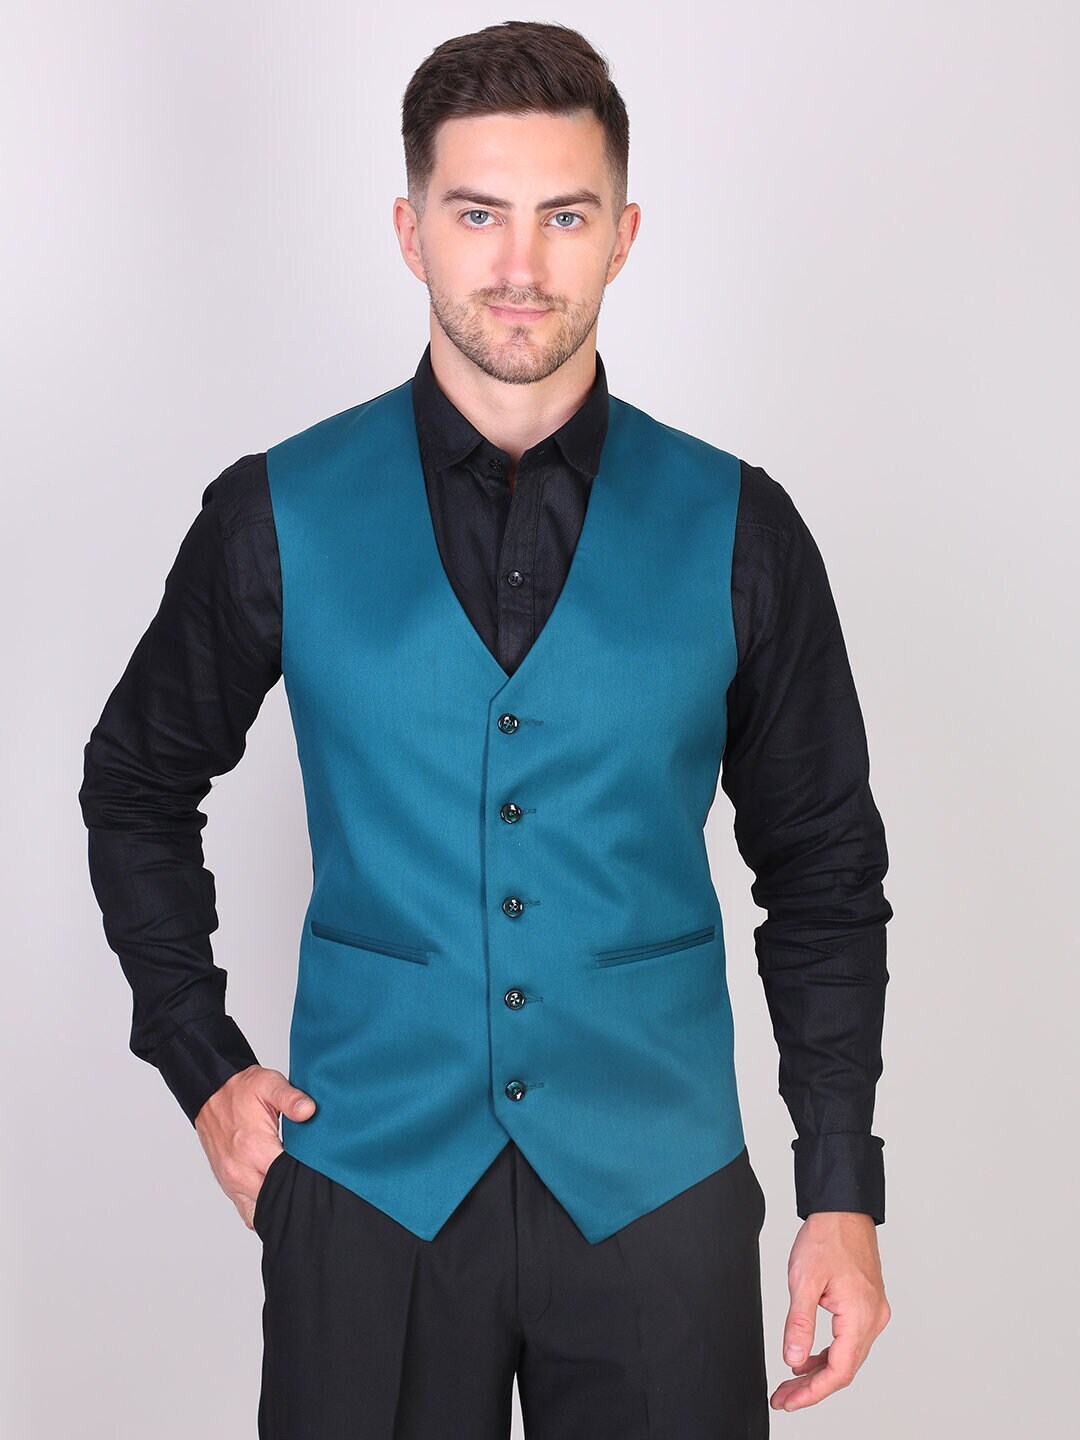 Bespoke Suit-men Teal Blue Vest for Wedding-grooms & - Etsy